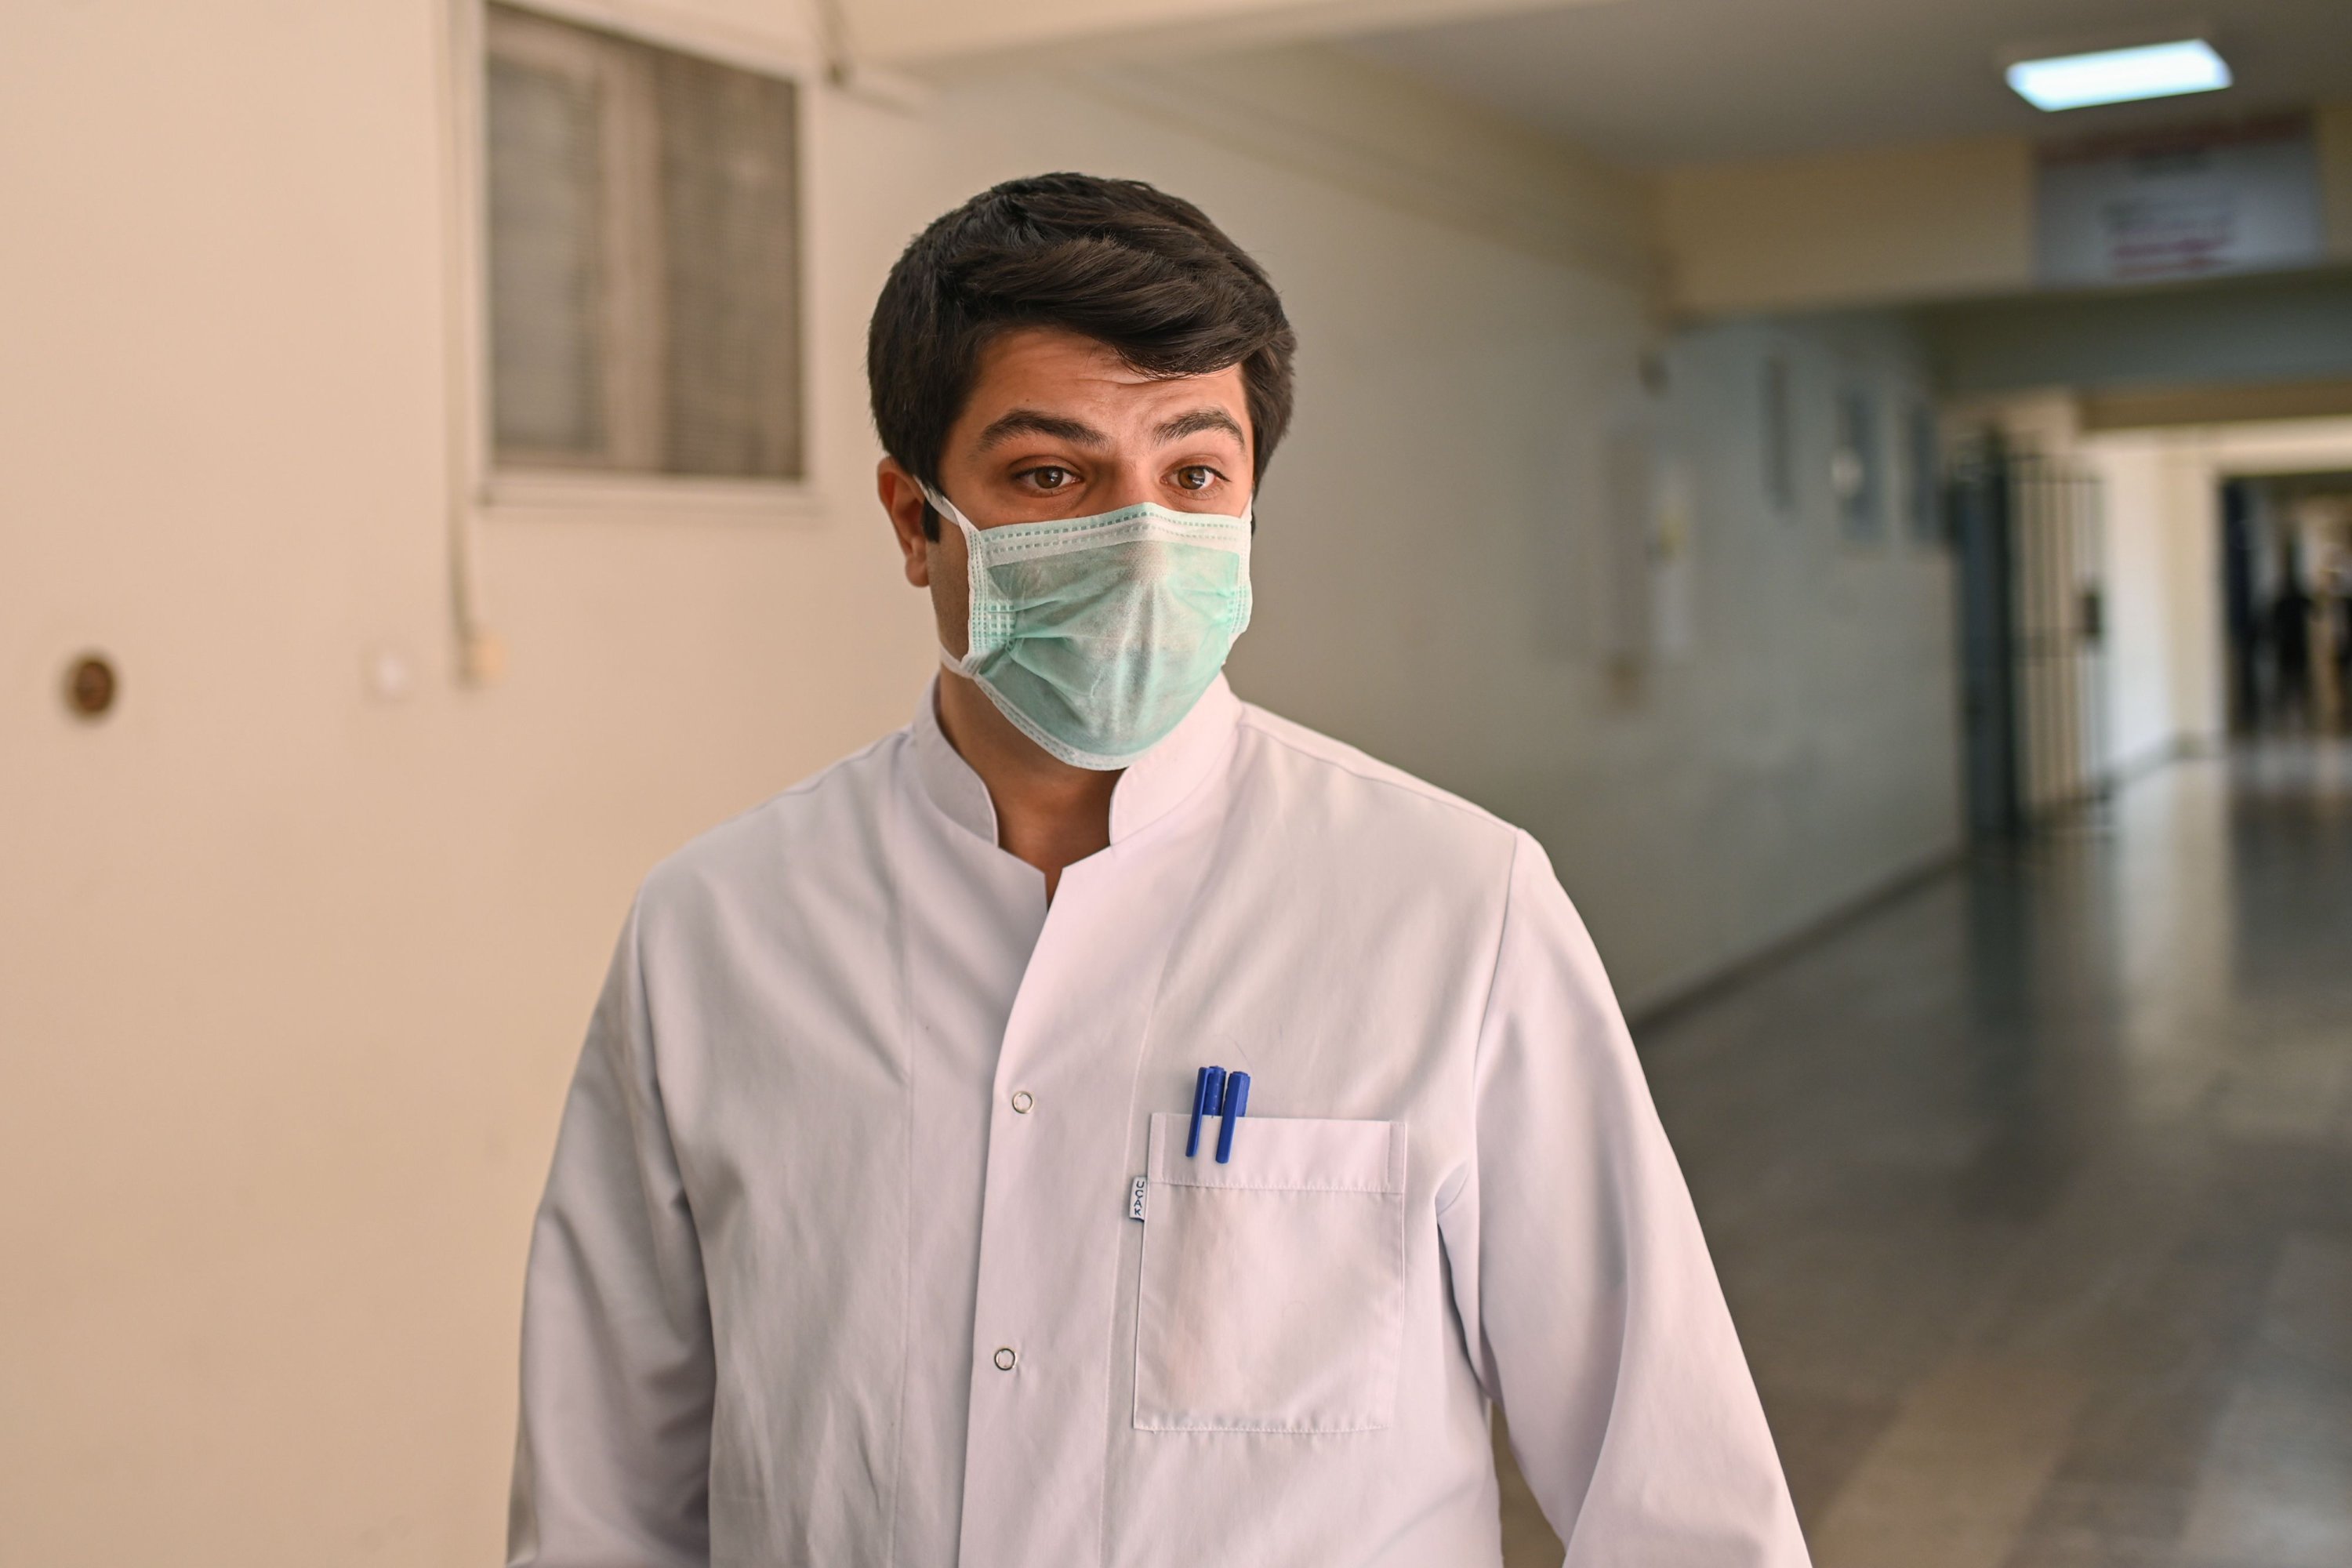   COVID-19 hastalarını tedavi eden 28 yaşındaki doktor yardımcısı Furkan Aydın röportaj sırasında poz veriyor.